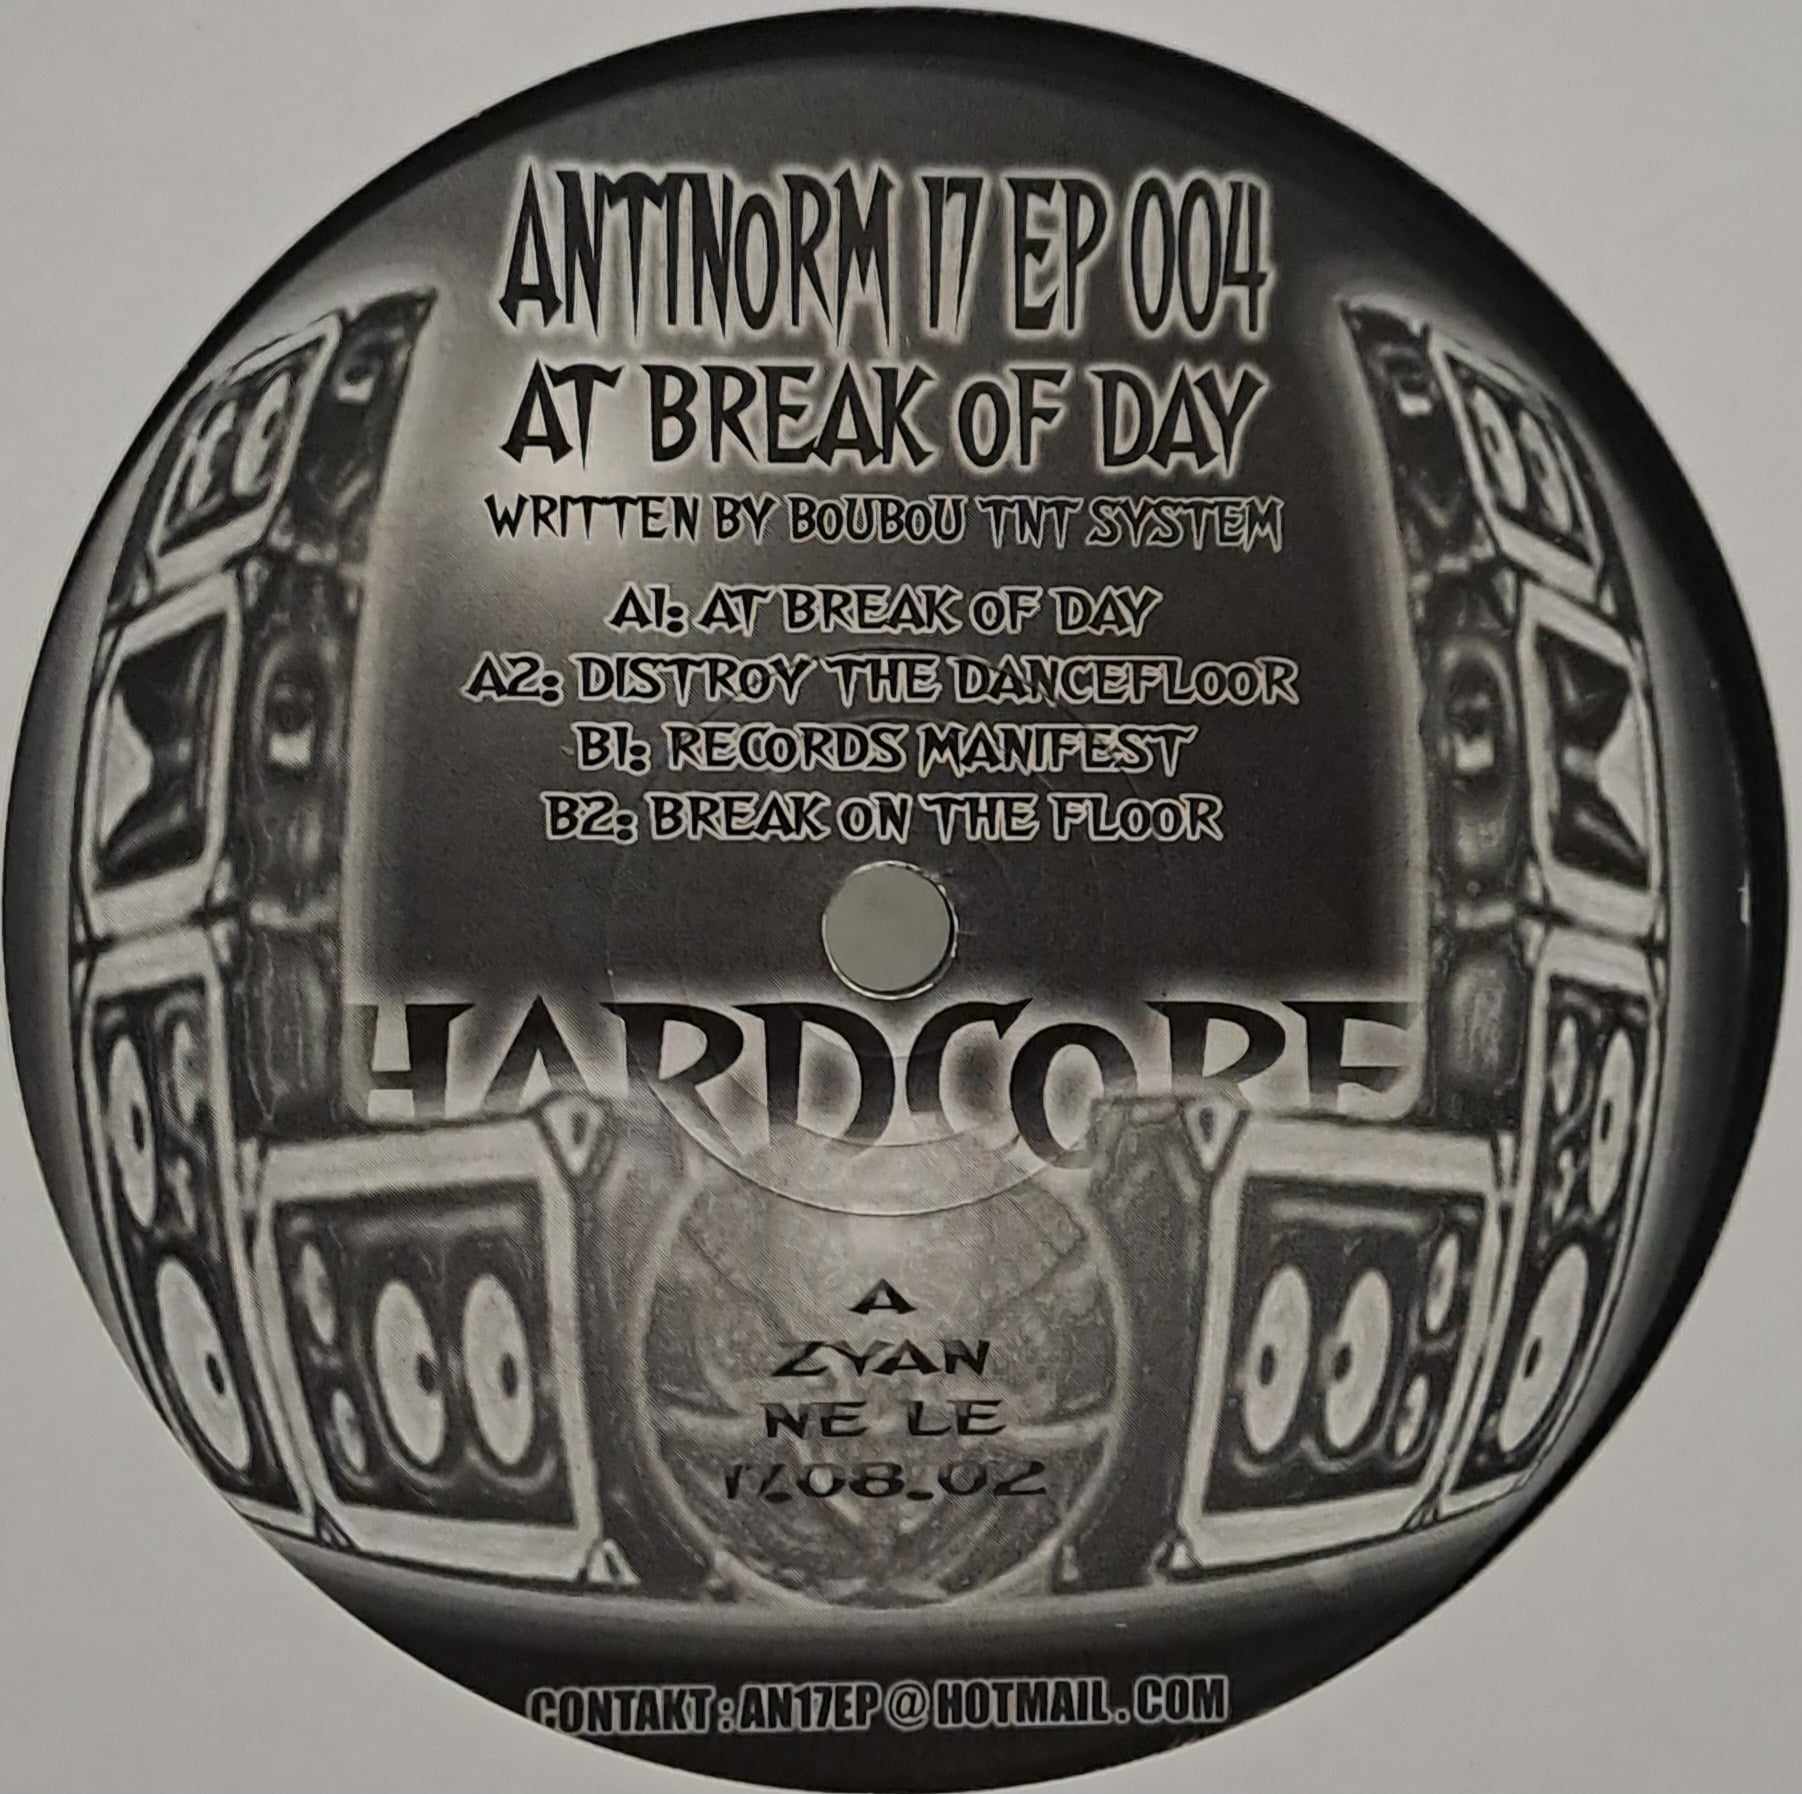 Antinorm 17 04 - vinyle hardcore